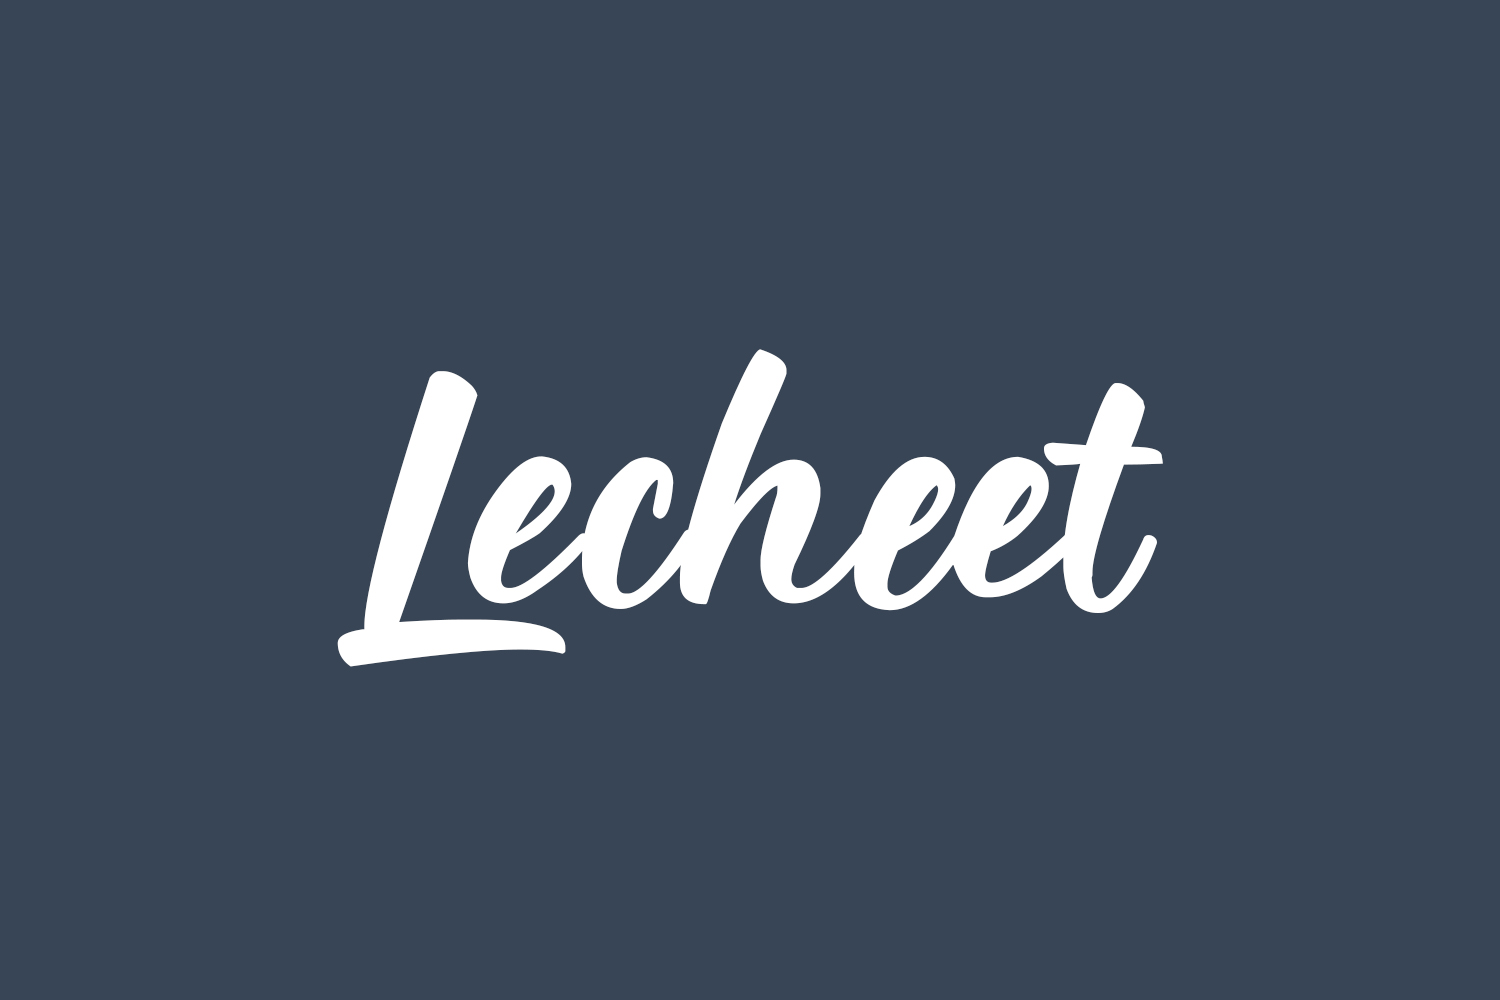 Lecheet Free Font